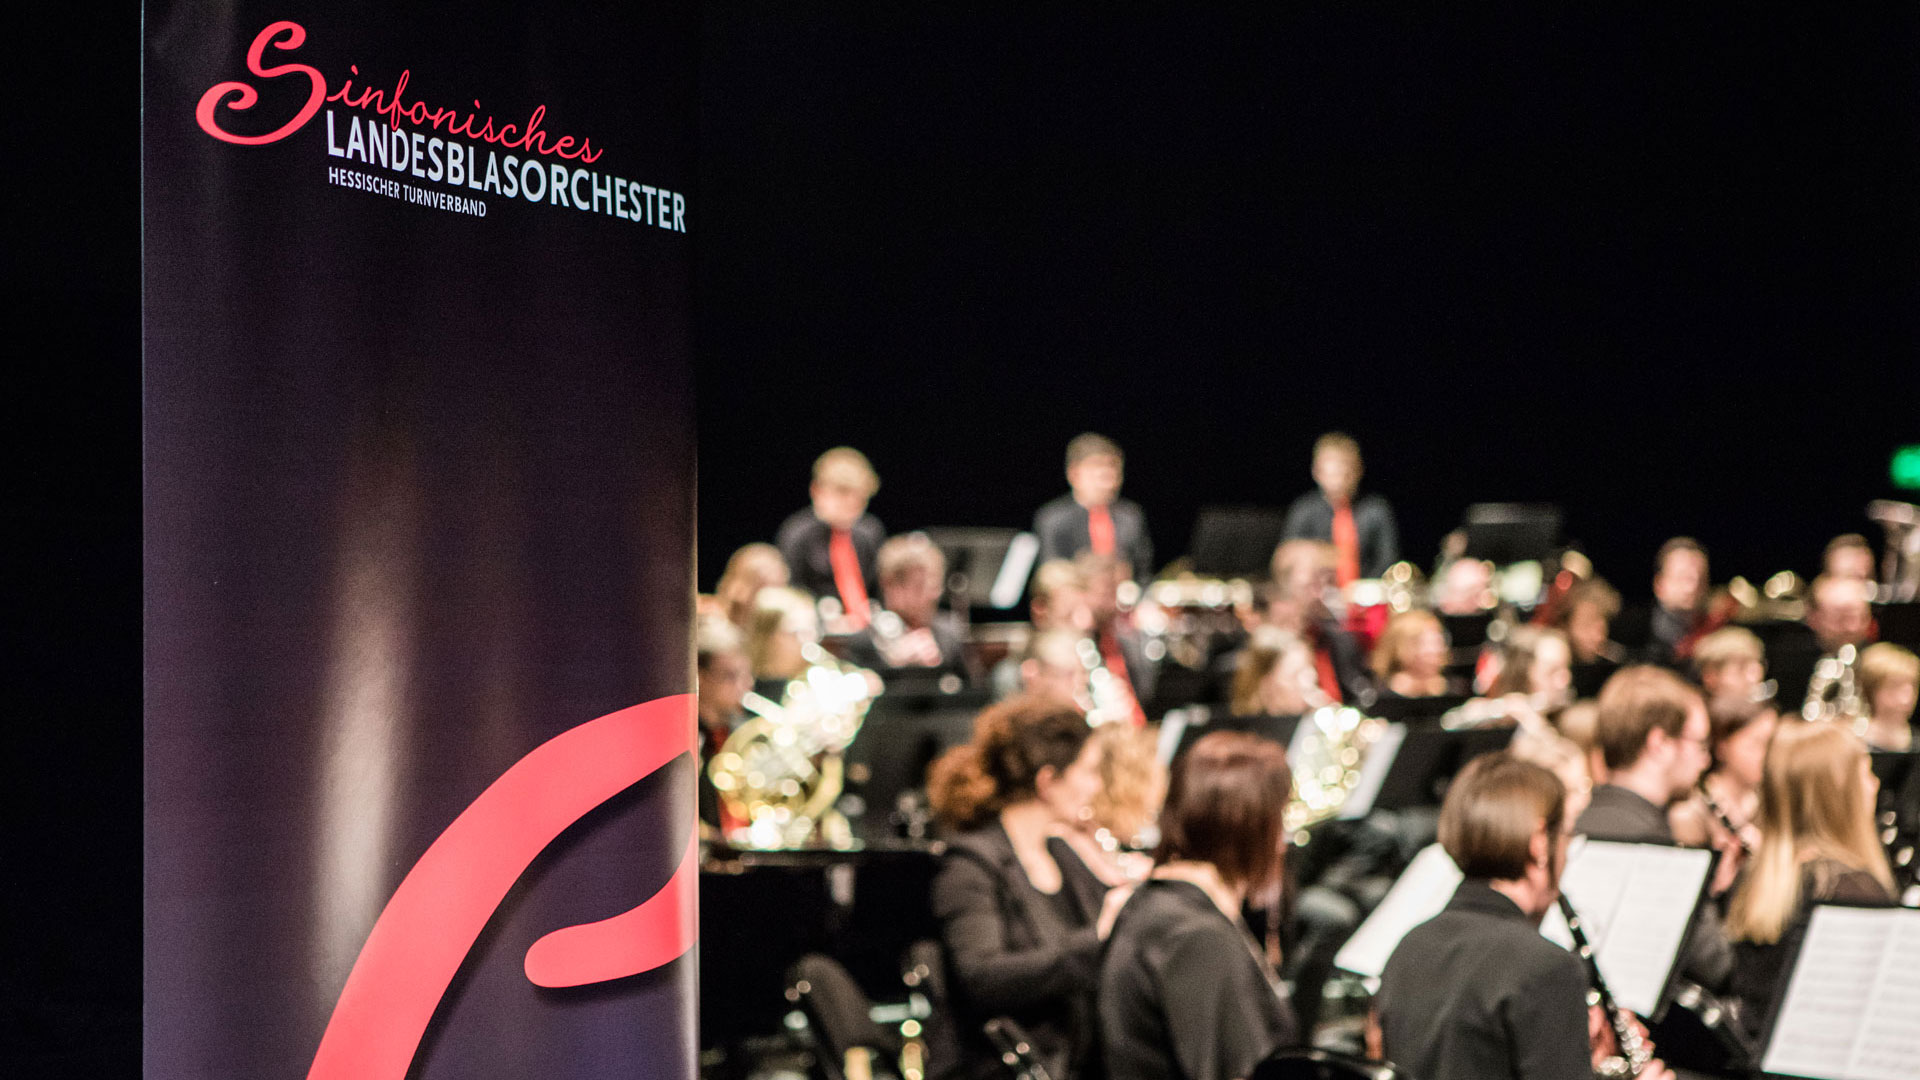 Sinfonisches Landesblasorchester des Hessischen Turnverbandes | Bildquelle: Sinfonisches Landesblasorchester des Hessischen Turnverbandes